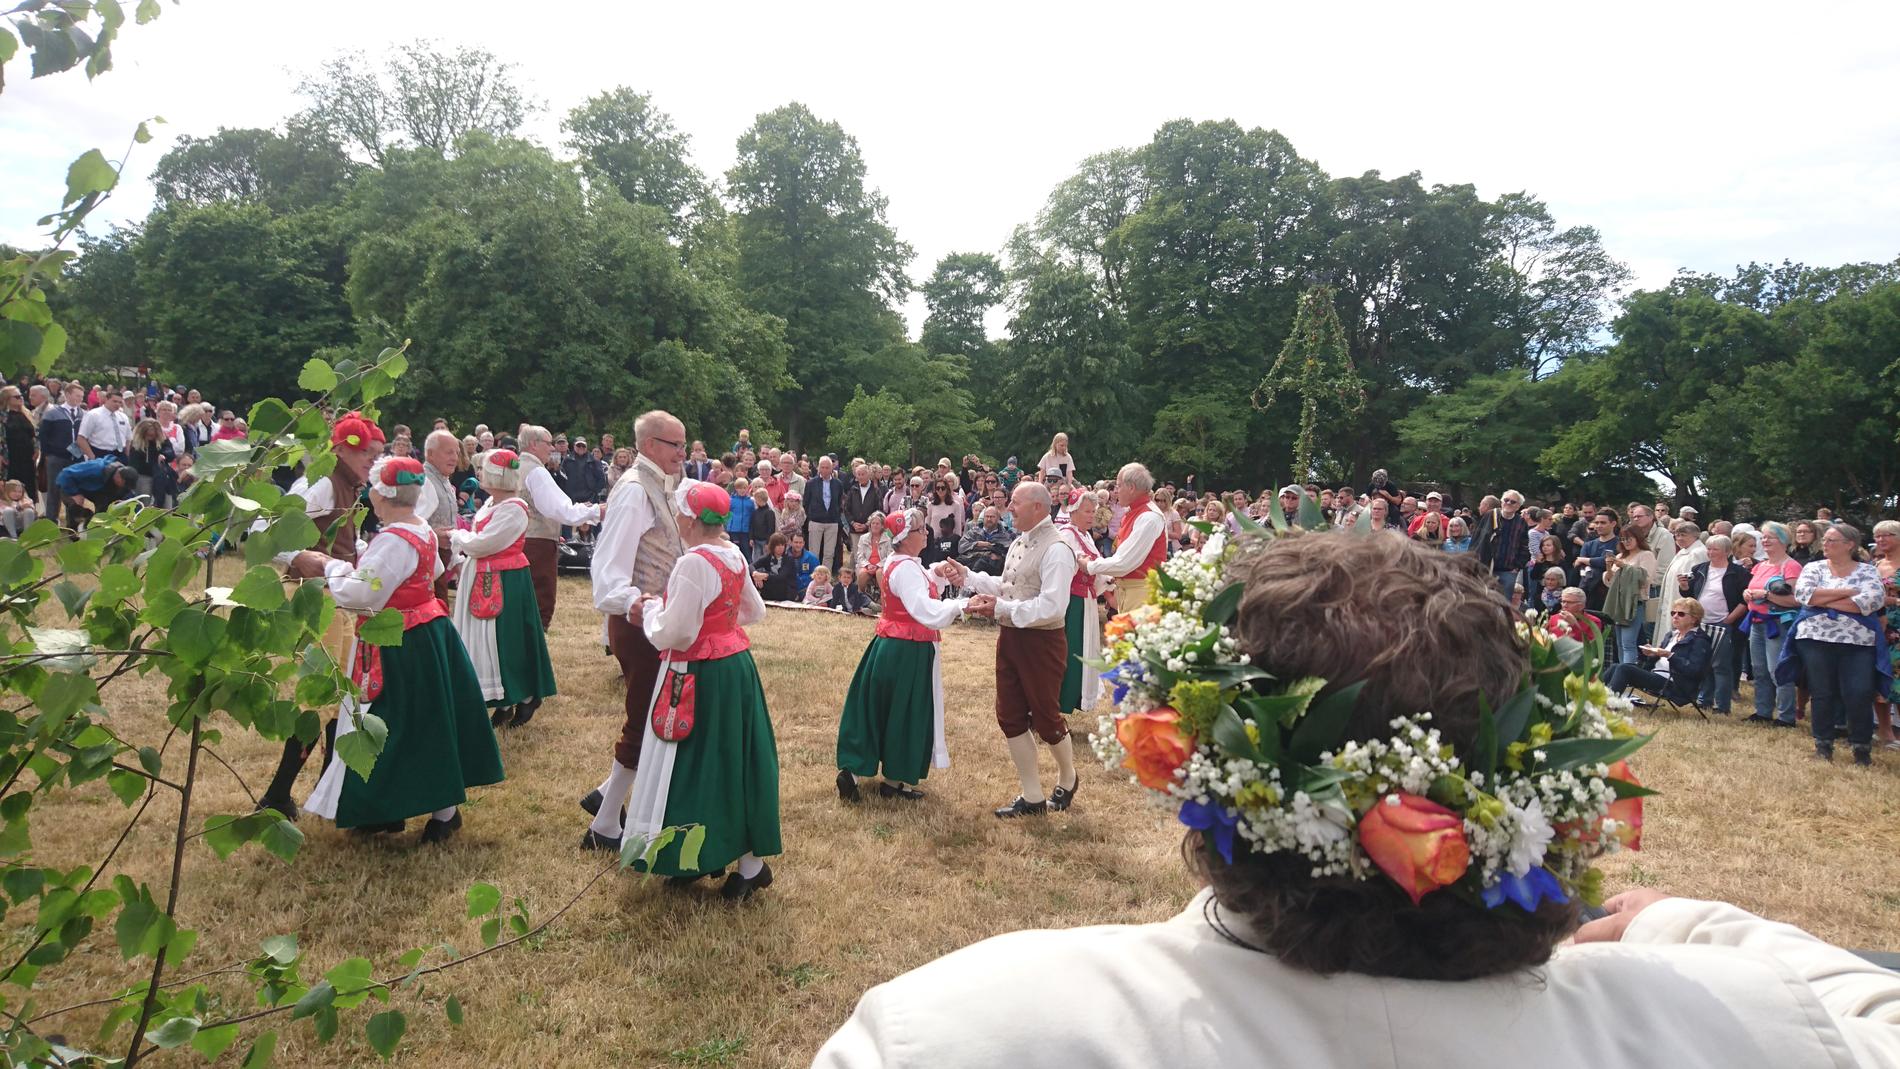 Vid den botaniska trädgården i Visby firas midsommaren med bland annat dans.